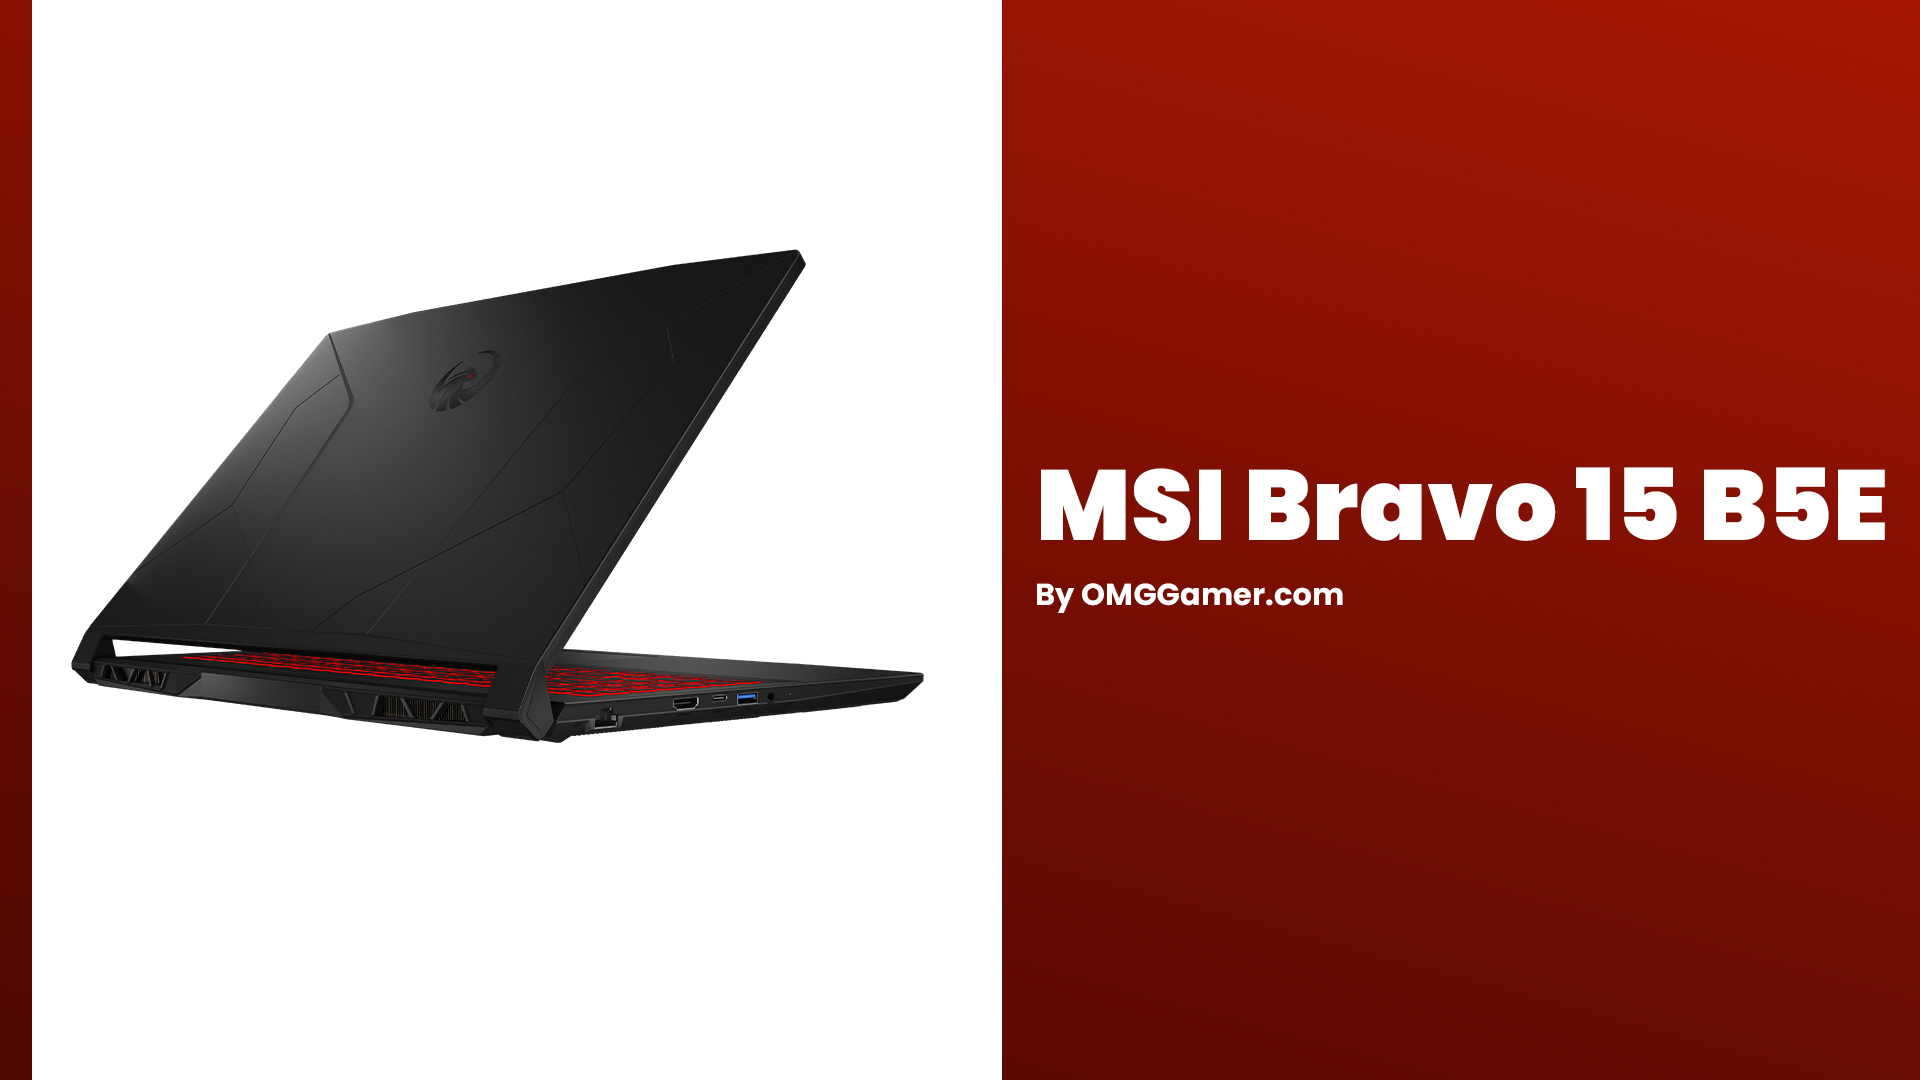 MSI Bravo 15 B5E: Best MSI Gaming Laptops